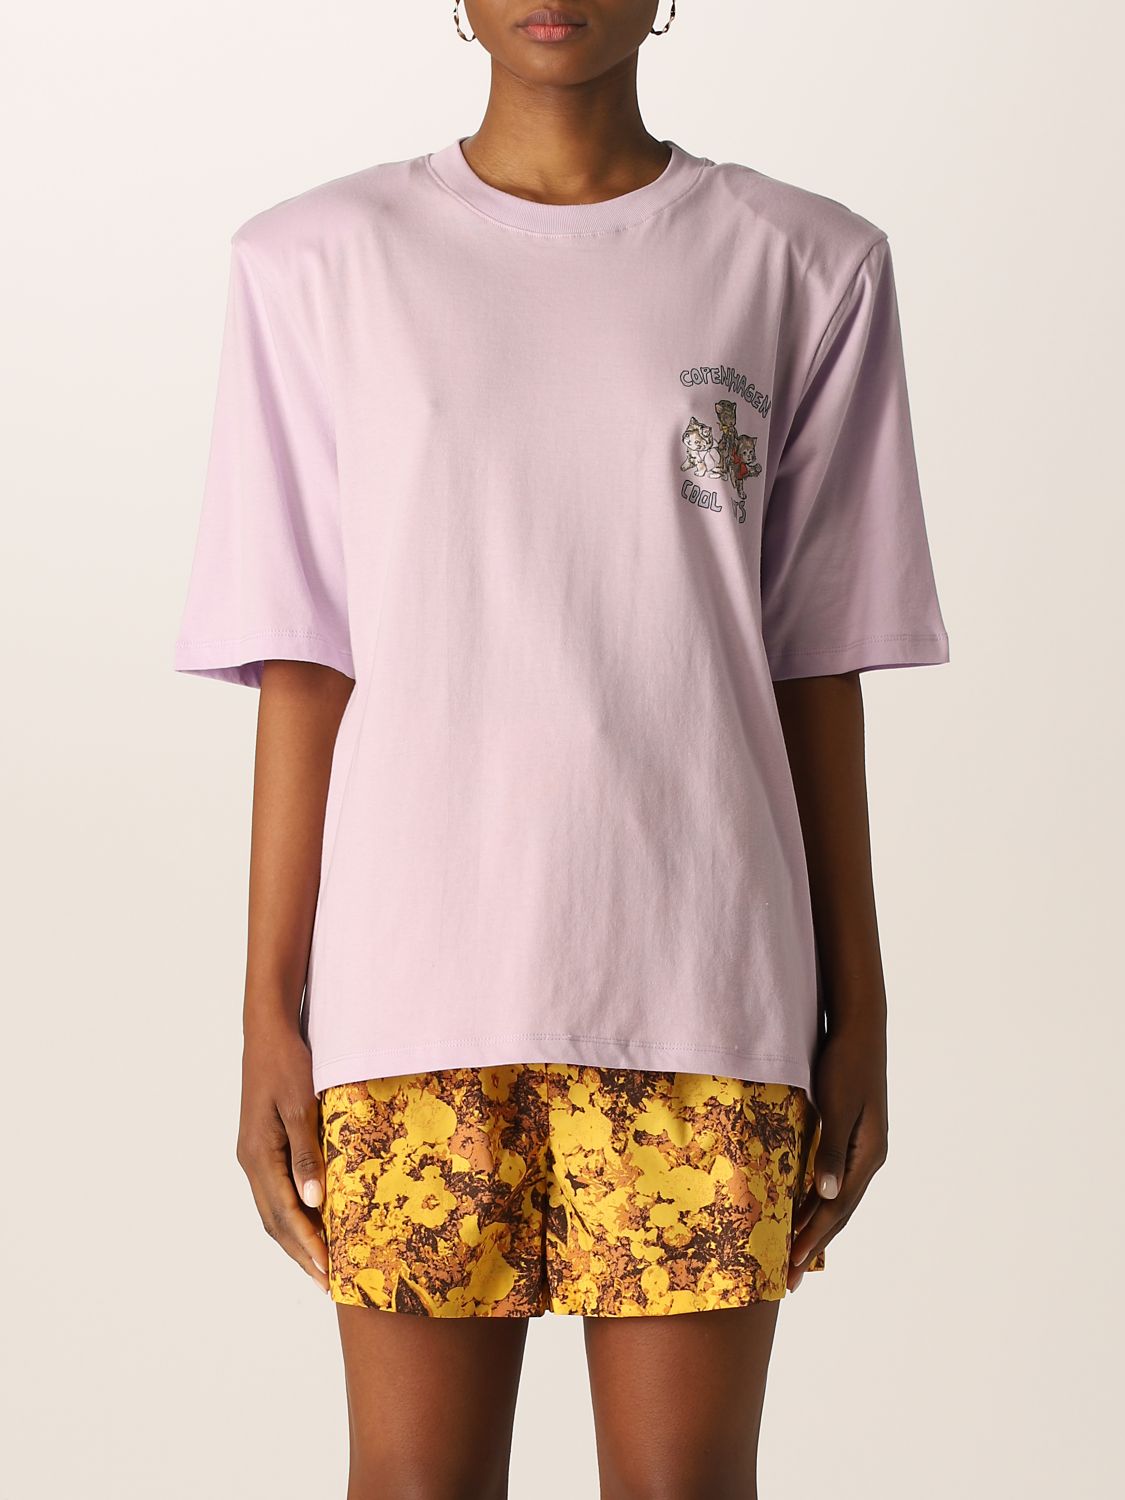 T-shirt Remain: Remain Damen t-shirt violett 1